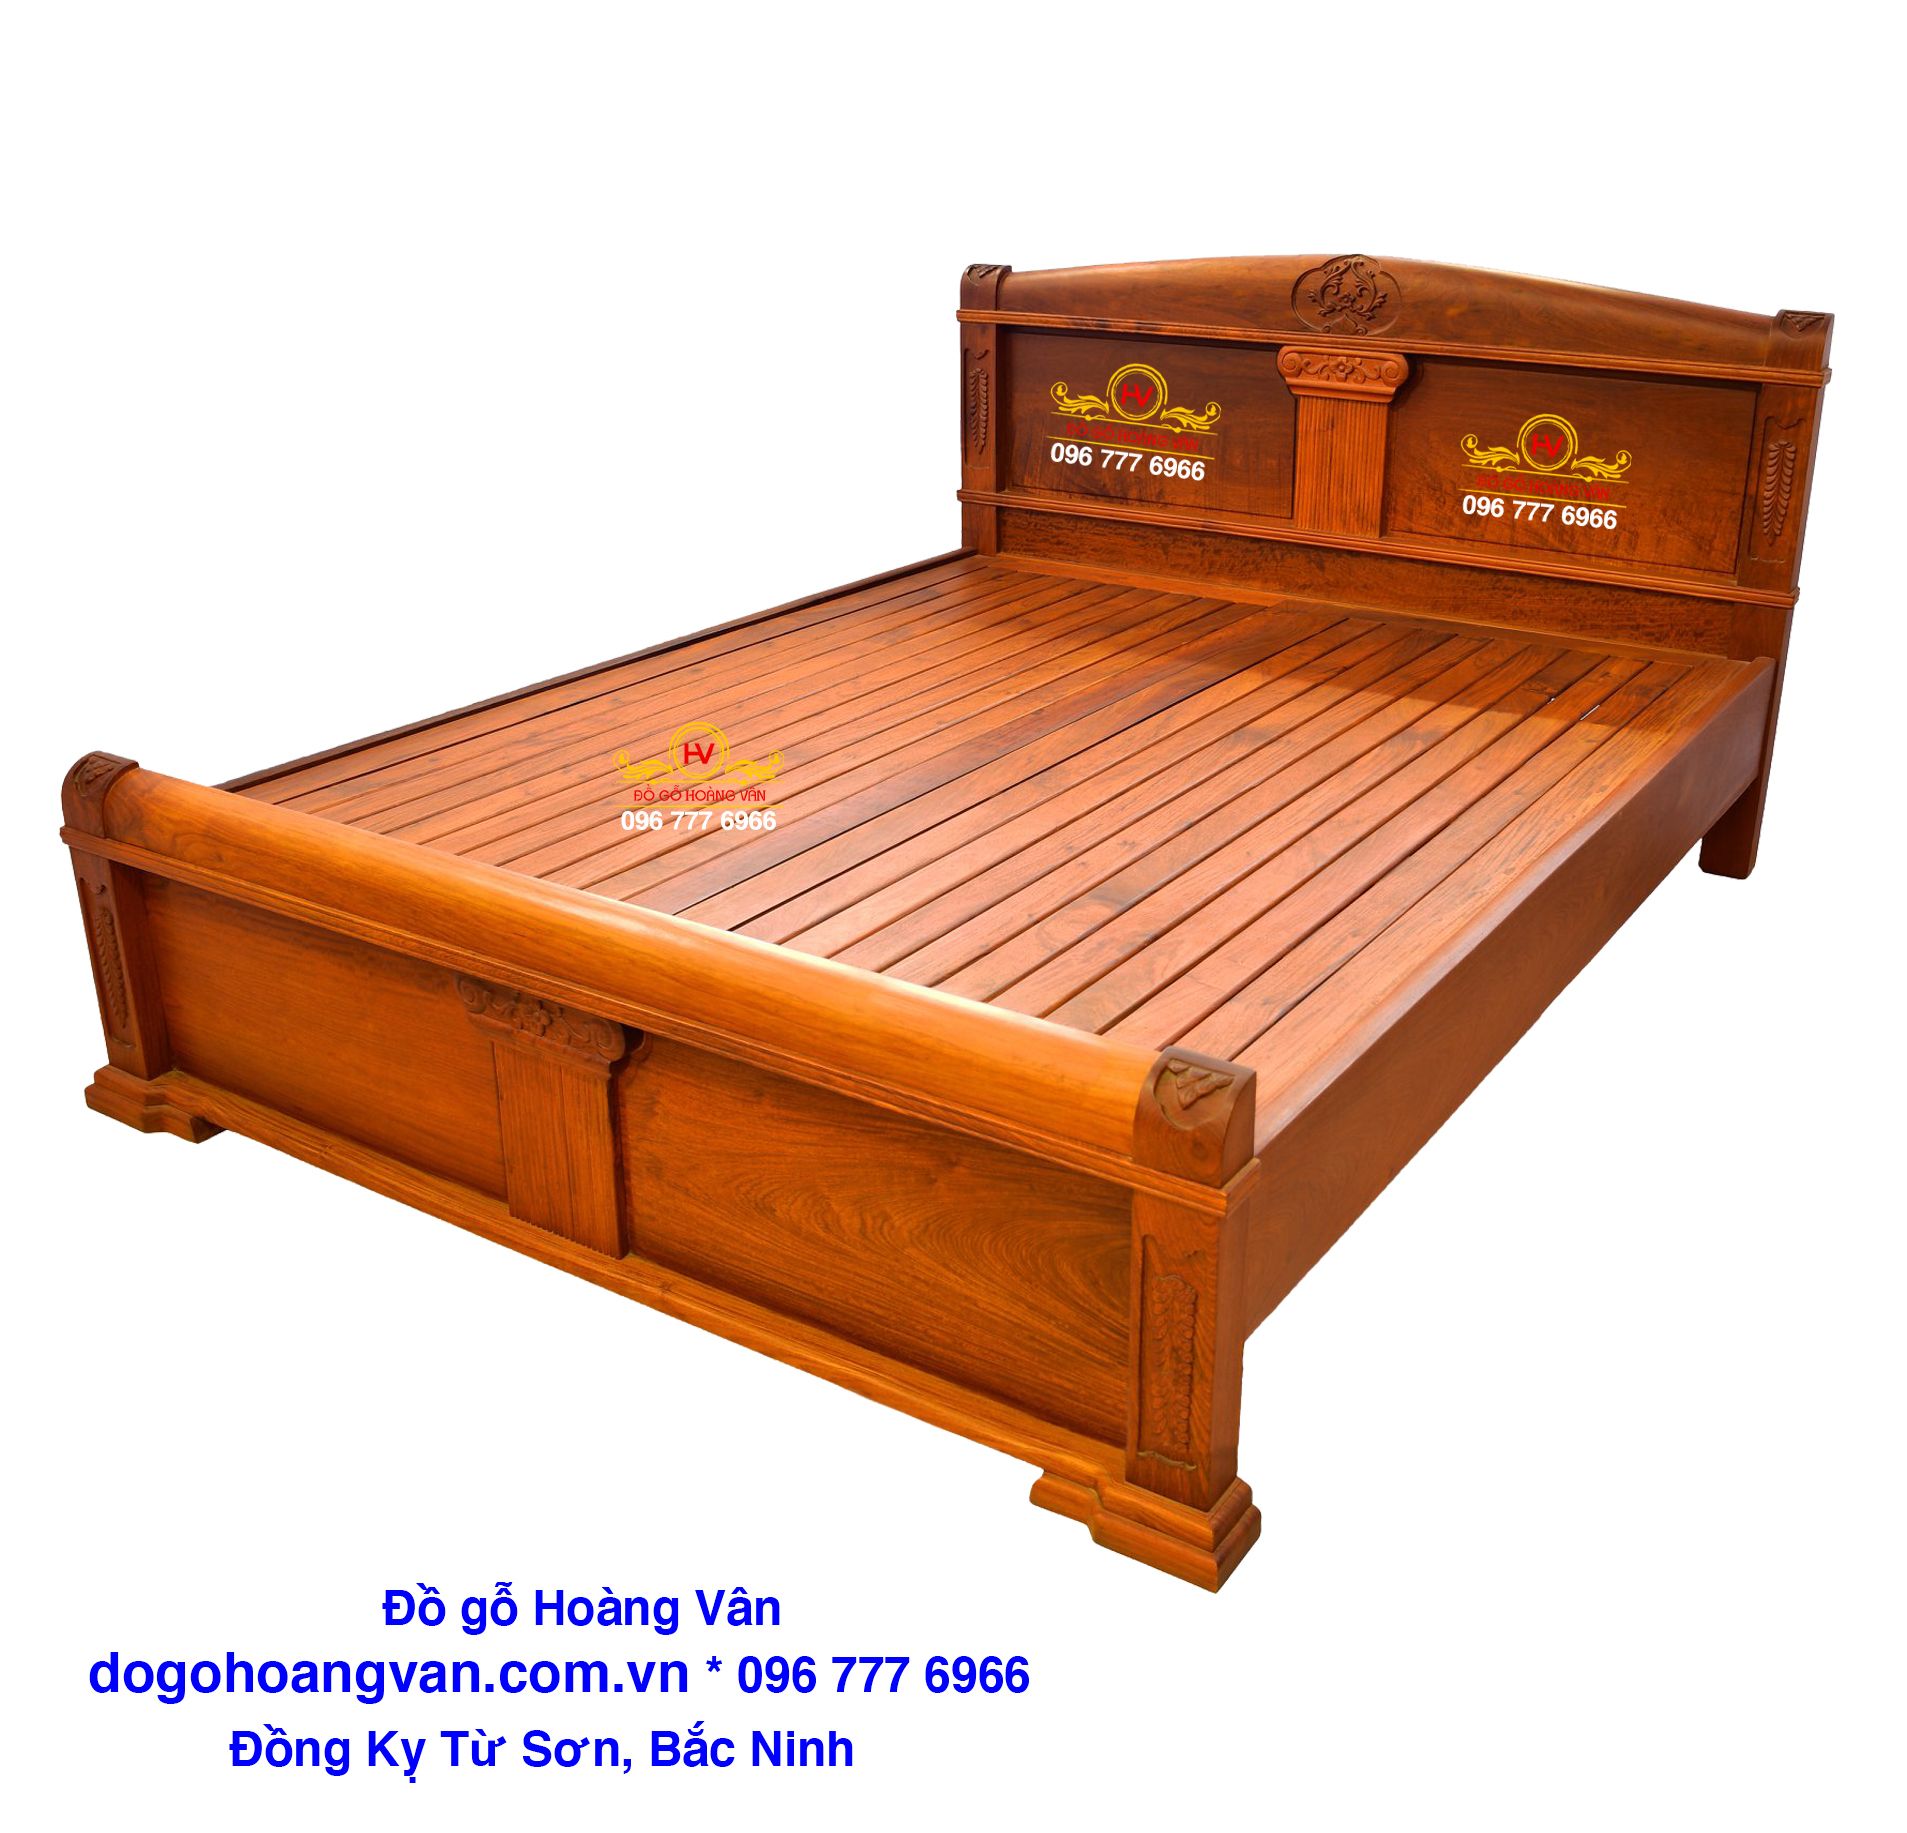 Bạn đang muốn tìm kiếm một giường ngủ gỗ đẹp nhất với giá rẻ? Hãy đến ngay cửa hàng của chúng tôi để tìm kiếm giải pháp cho bạn. Với nhiều mẫu mã và kiểu dáng đa dạng, giường ngủ gỗ đẹp nhất giá rẻ sẽ mang đến cho bạn sự thư thái và phong cách cho phòng ngủ của bạn.